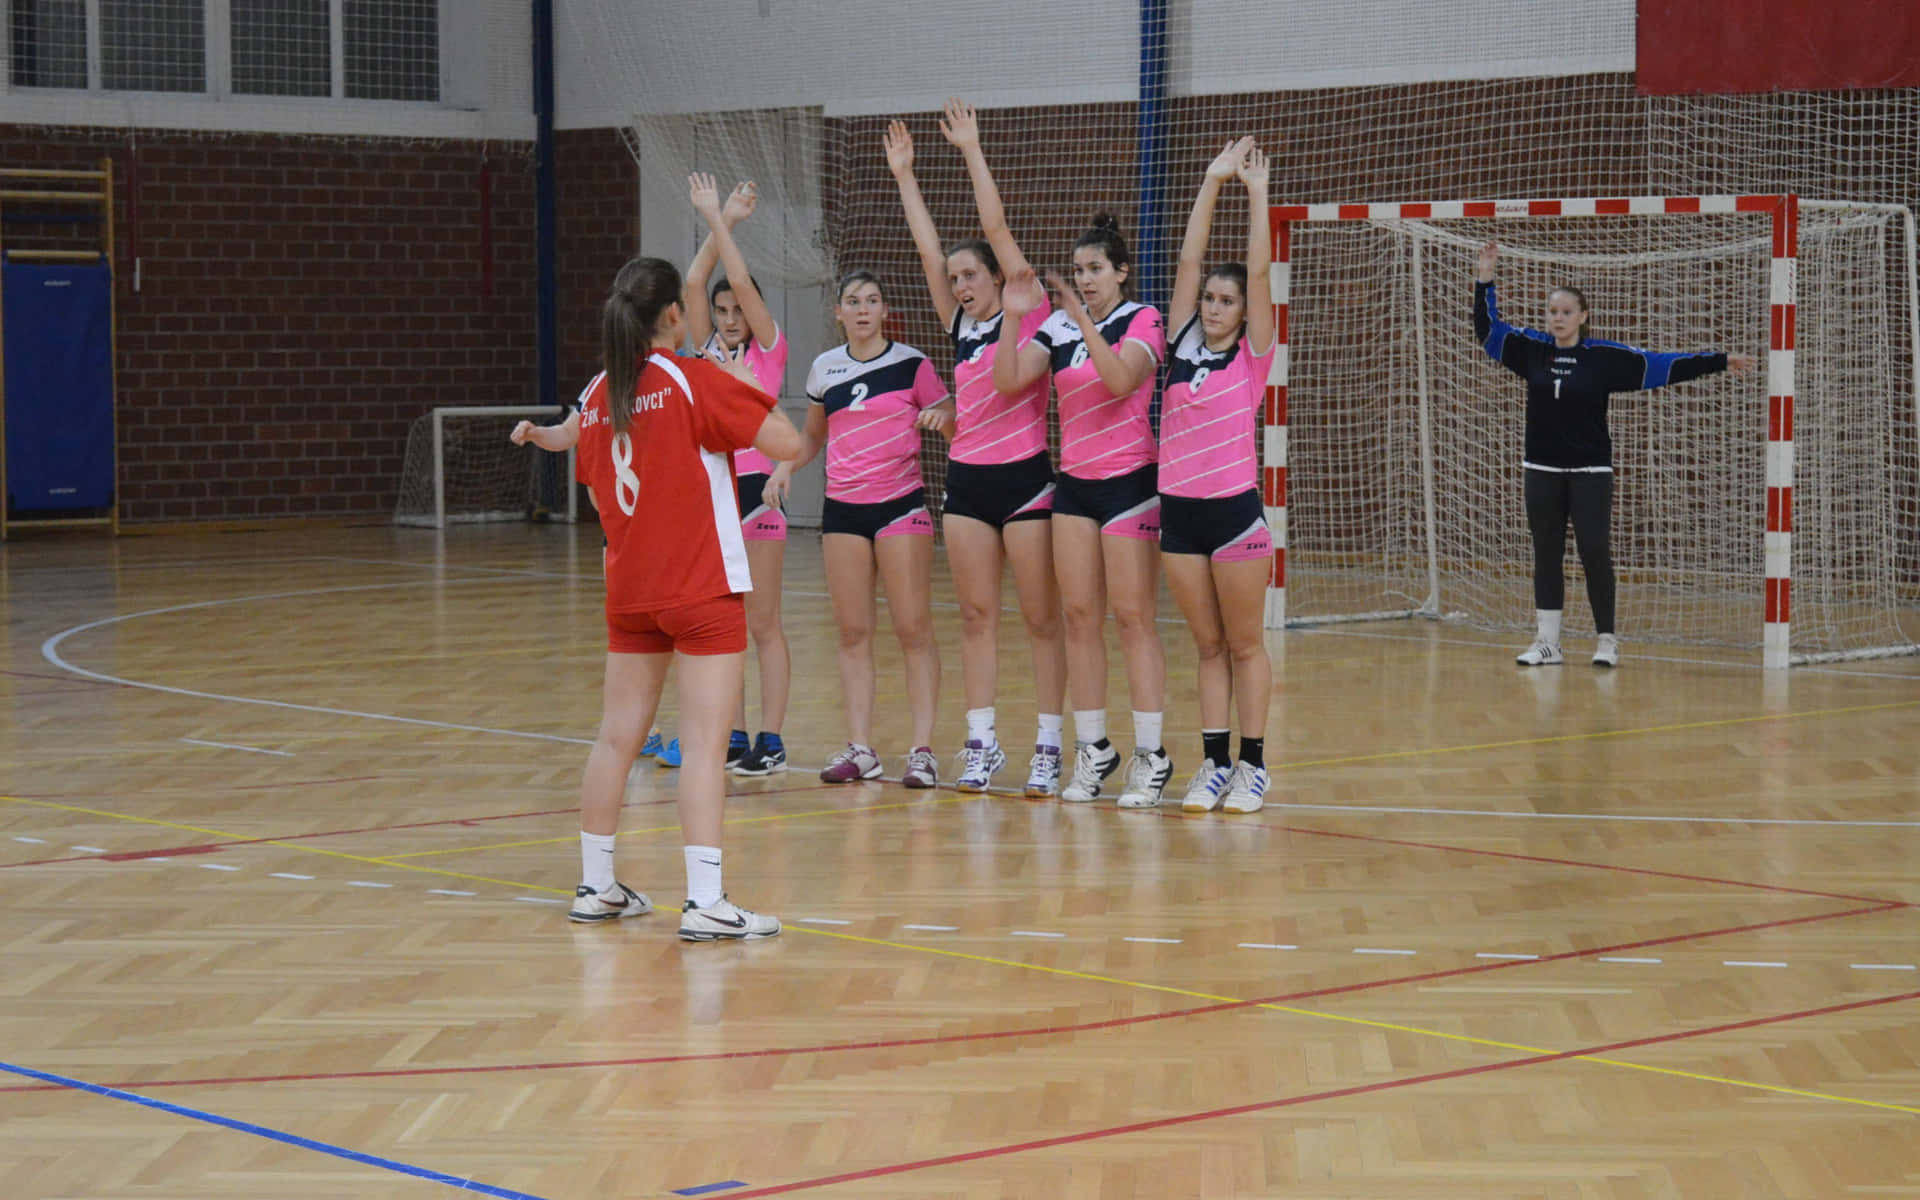 Einegruppe Von Mädchen Spielt Volleyball. Wallpaper